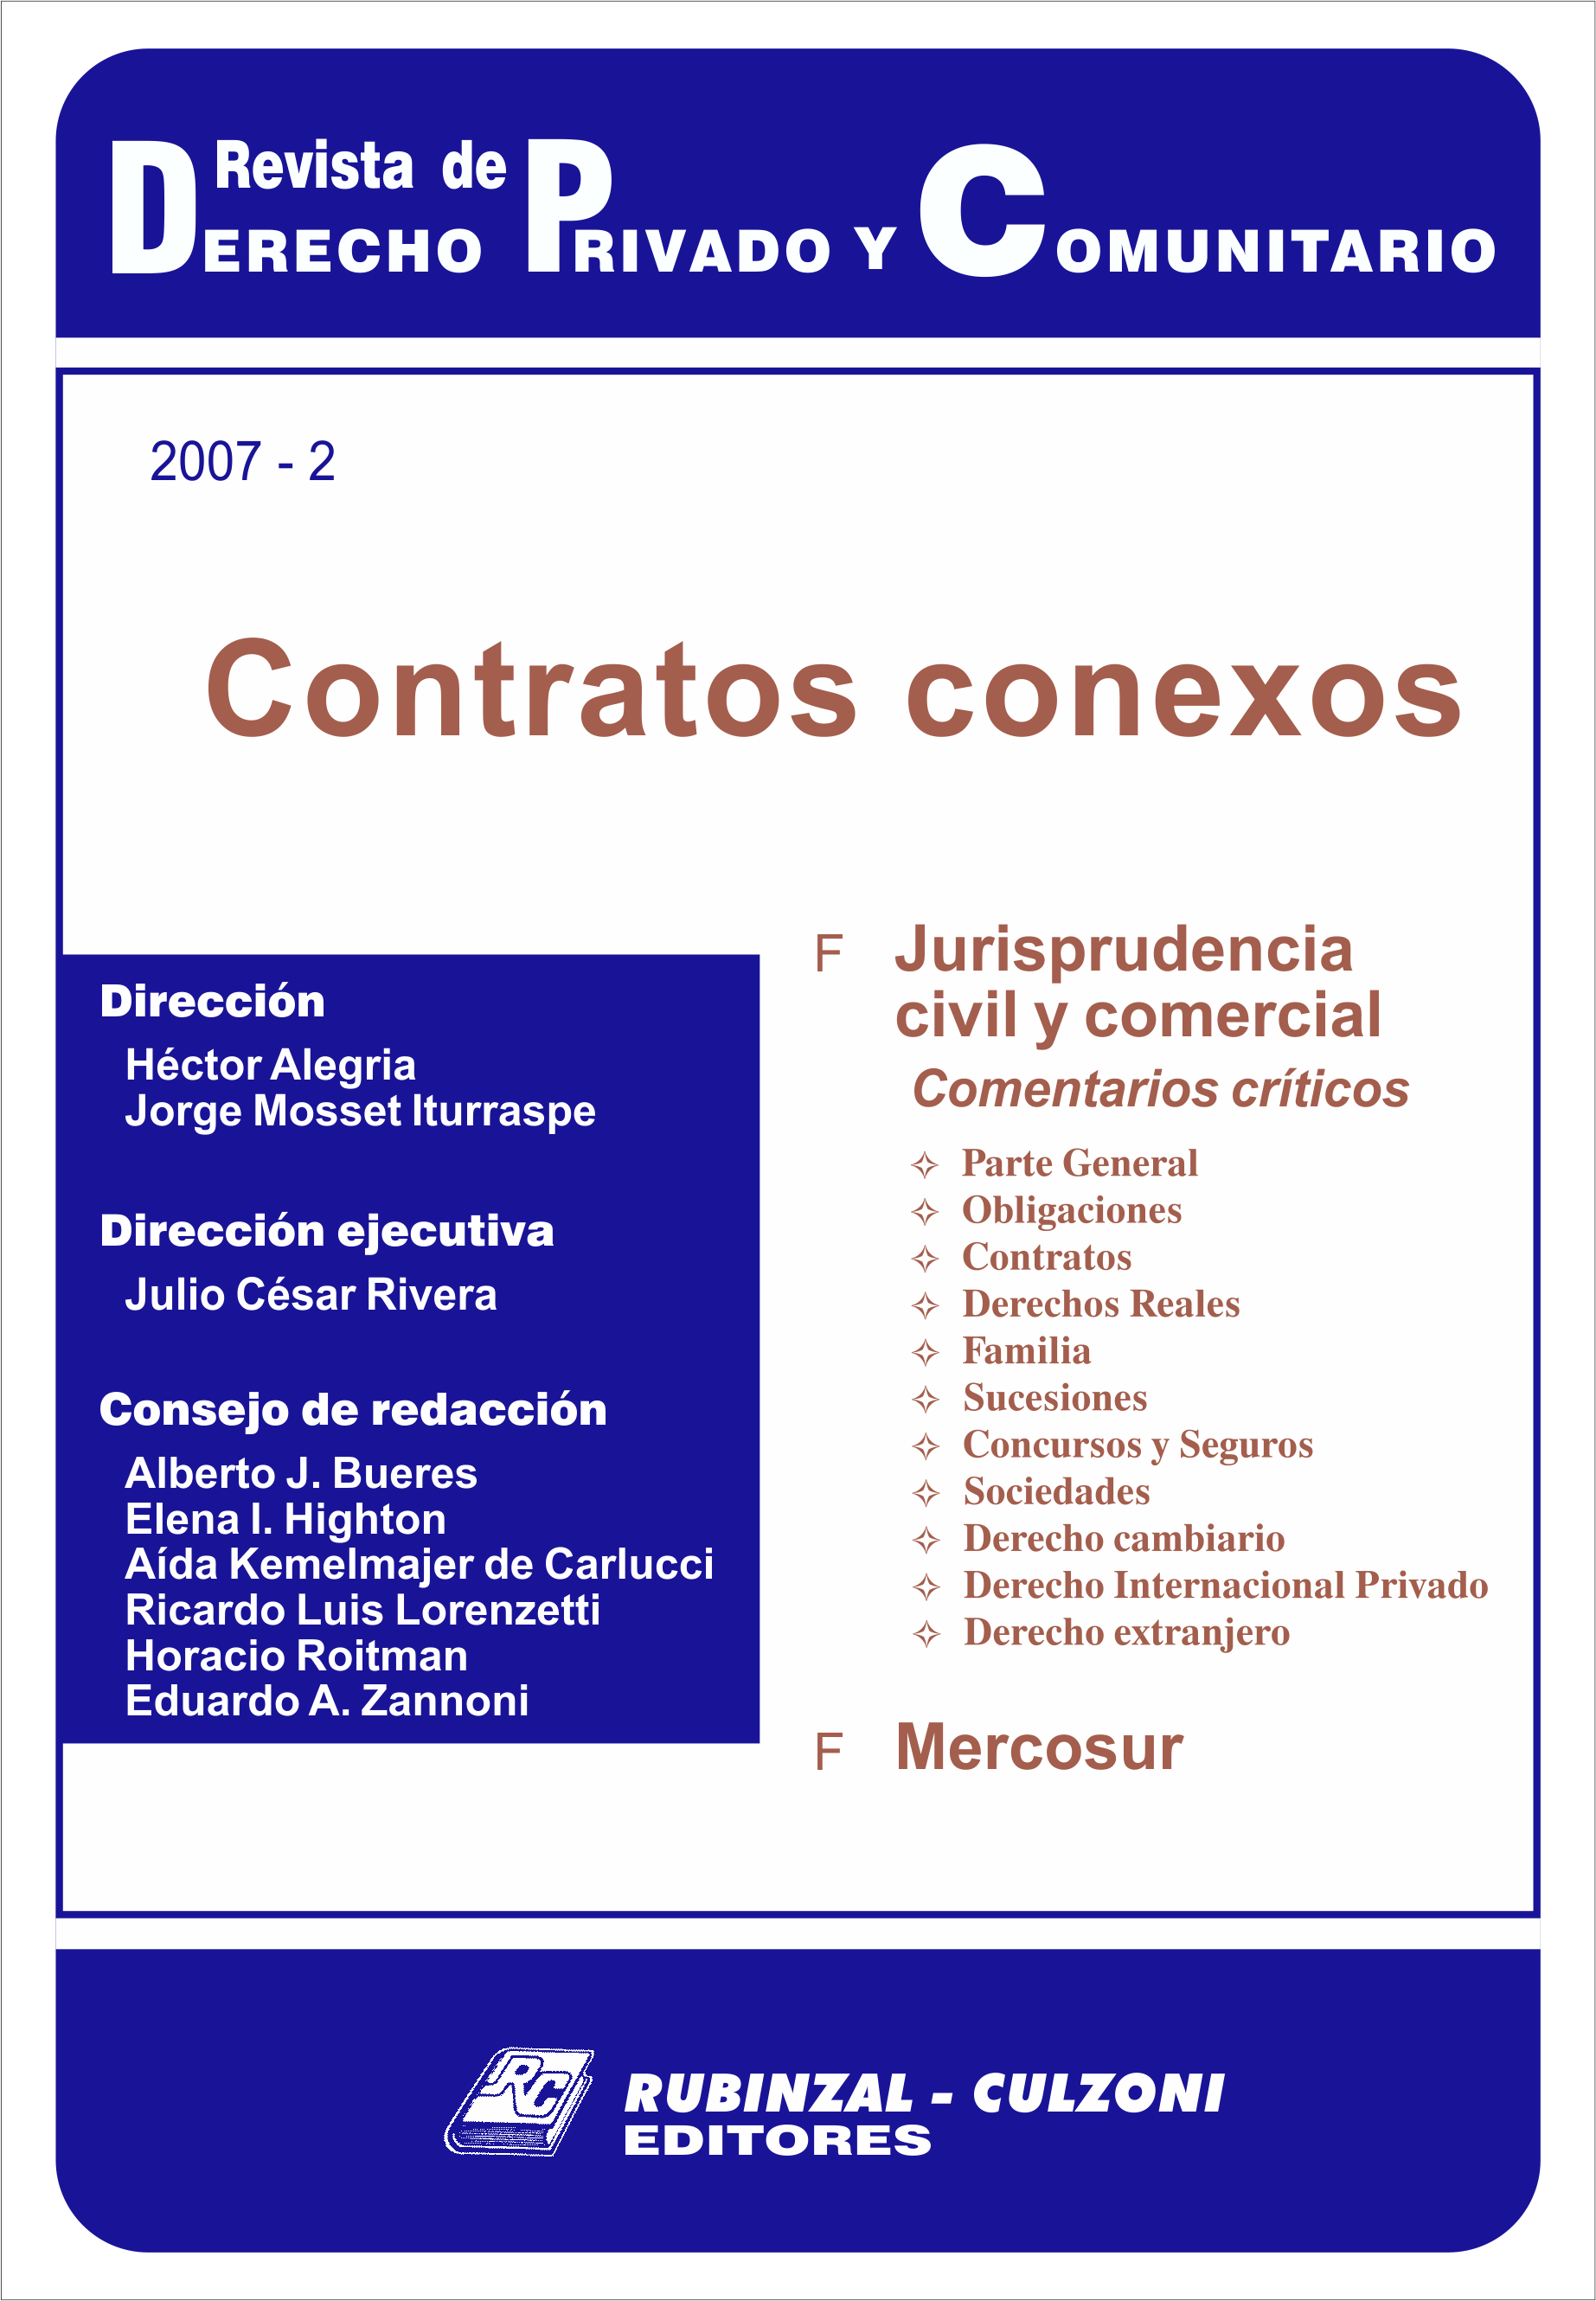 Revista de Derecho Privado y Comunitario - Contratos conexos.